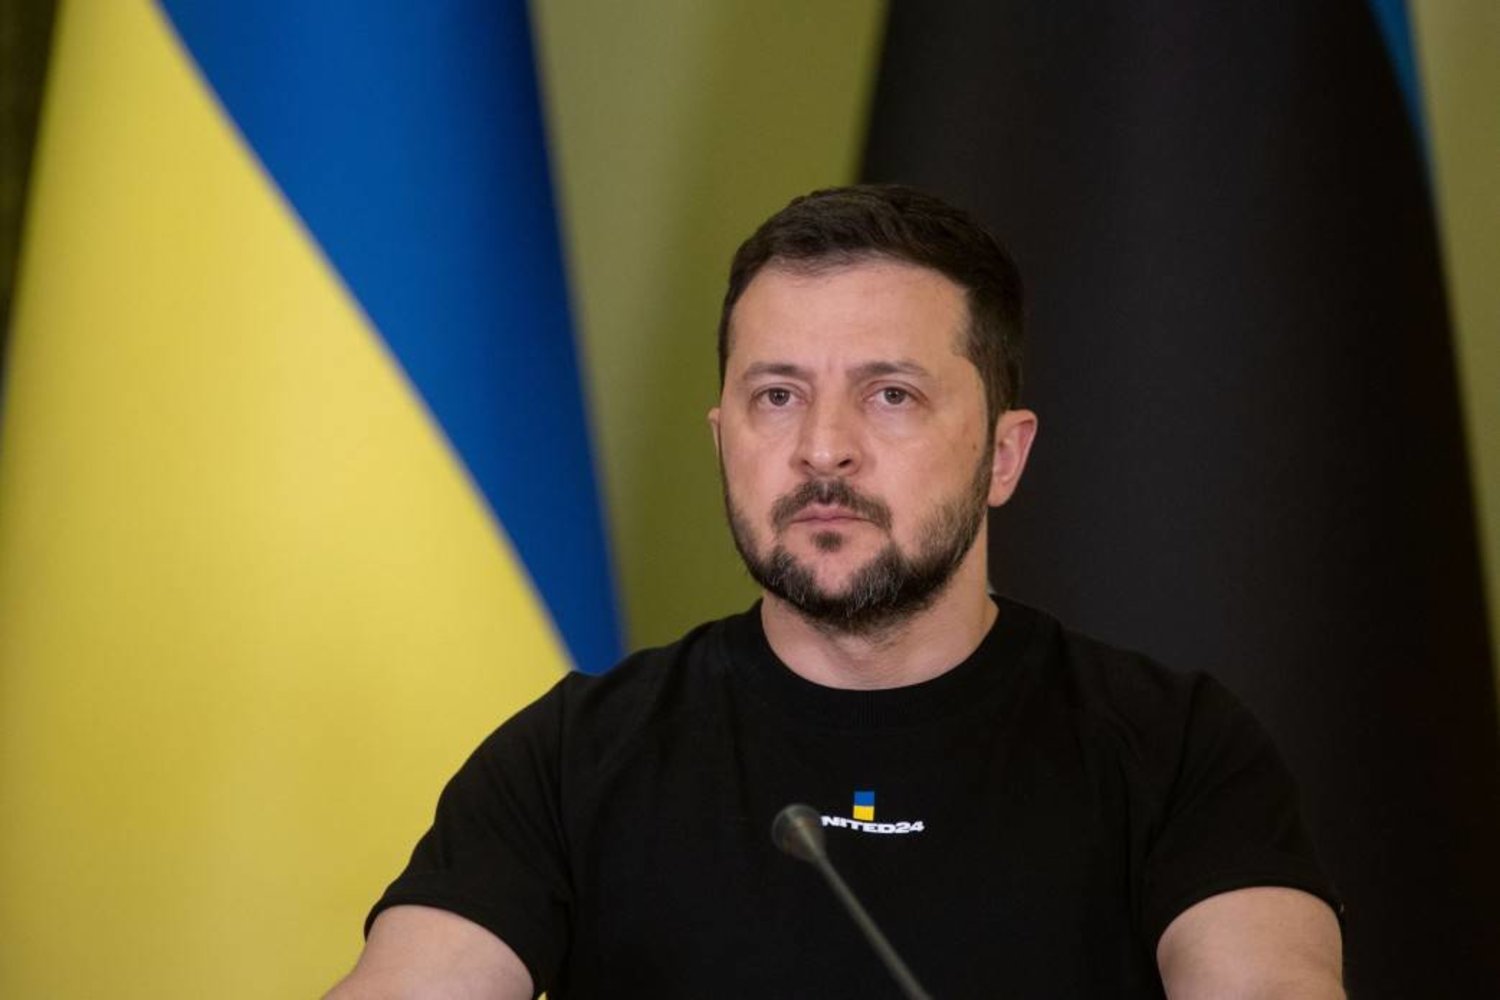 "الجارديان": رئيس أوكرانيا يؤكد عزمه تغيير قيادات بارزة في الدولة على رأسها قائد الجيش